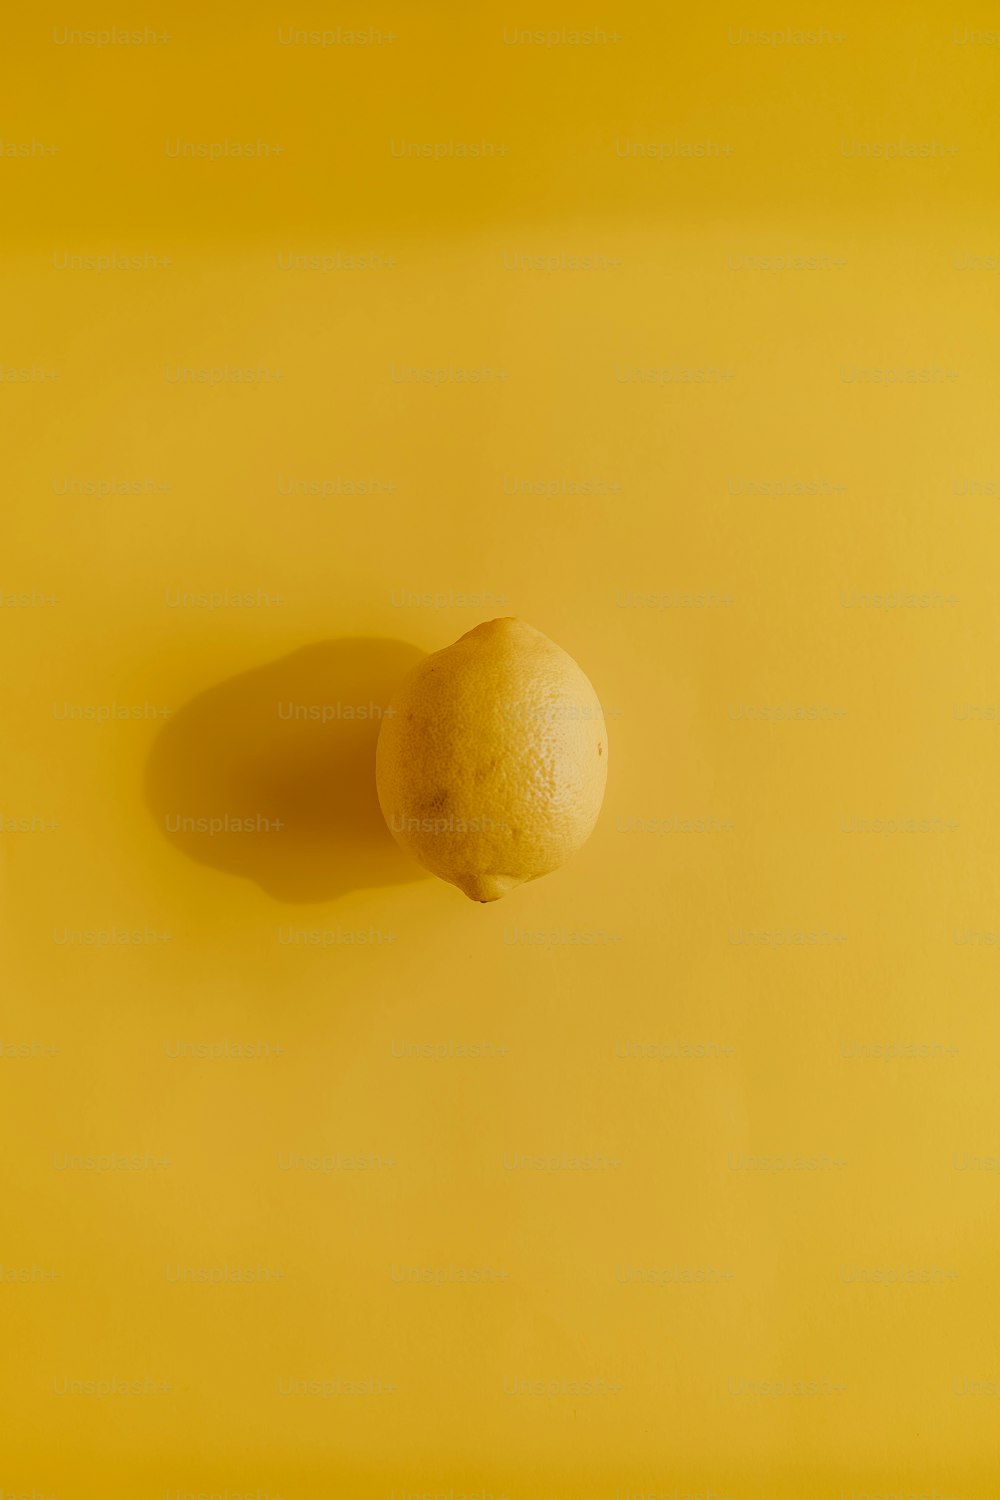 eine Zitrone, die auf einer gelben Oberfläche sitzt